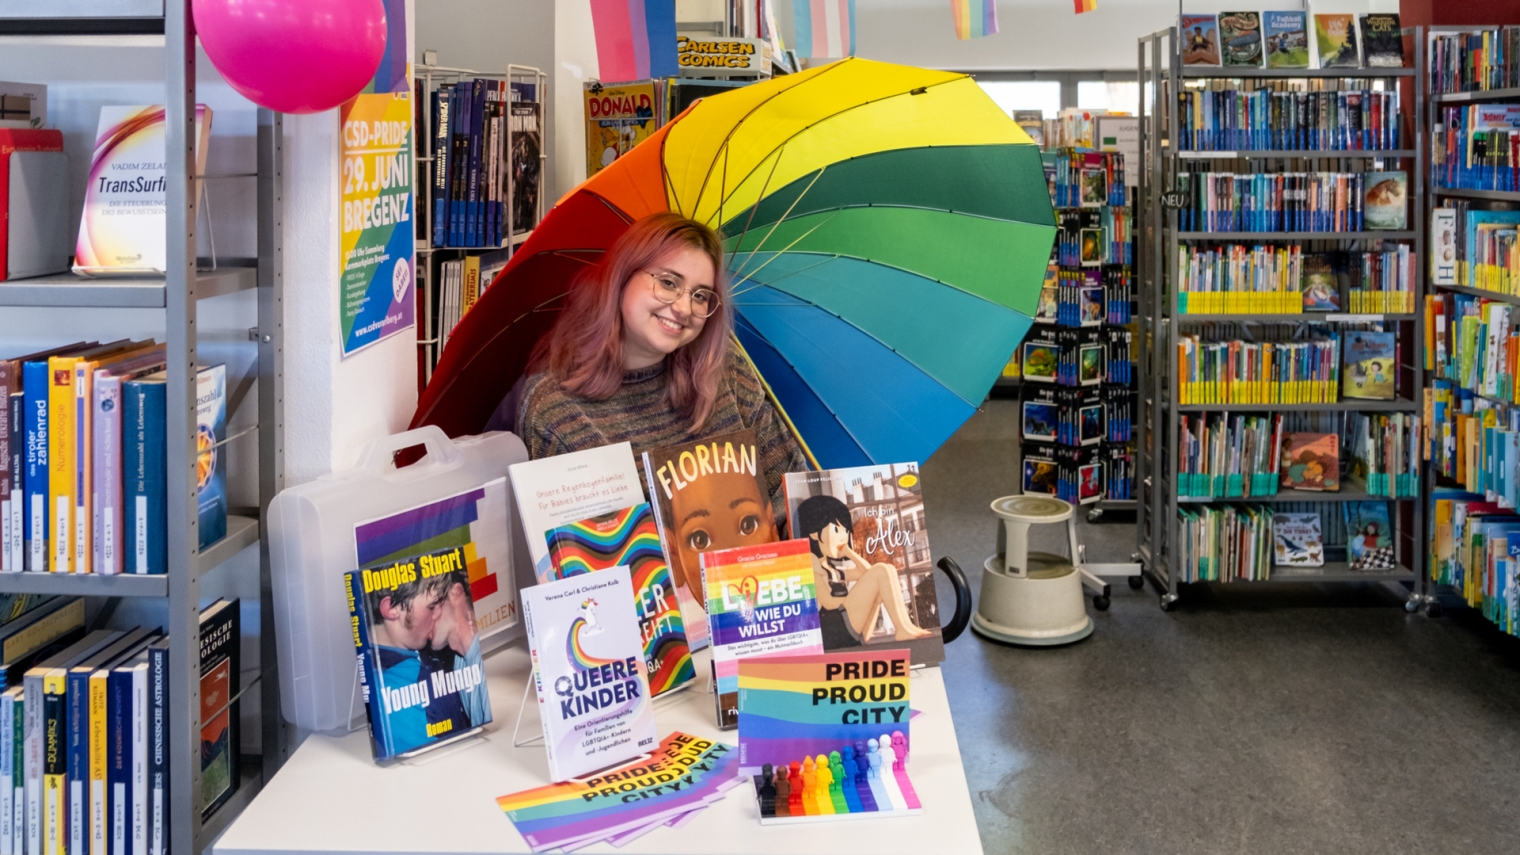 Das Bild Zeigt Maria Götz vom Team der Bregenzer Stadtbücherei an einem Bücherinfotisch mit ausleihbaren queeren Büchern.